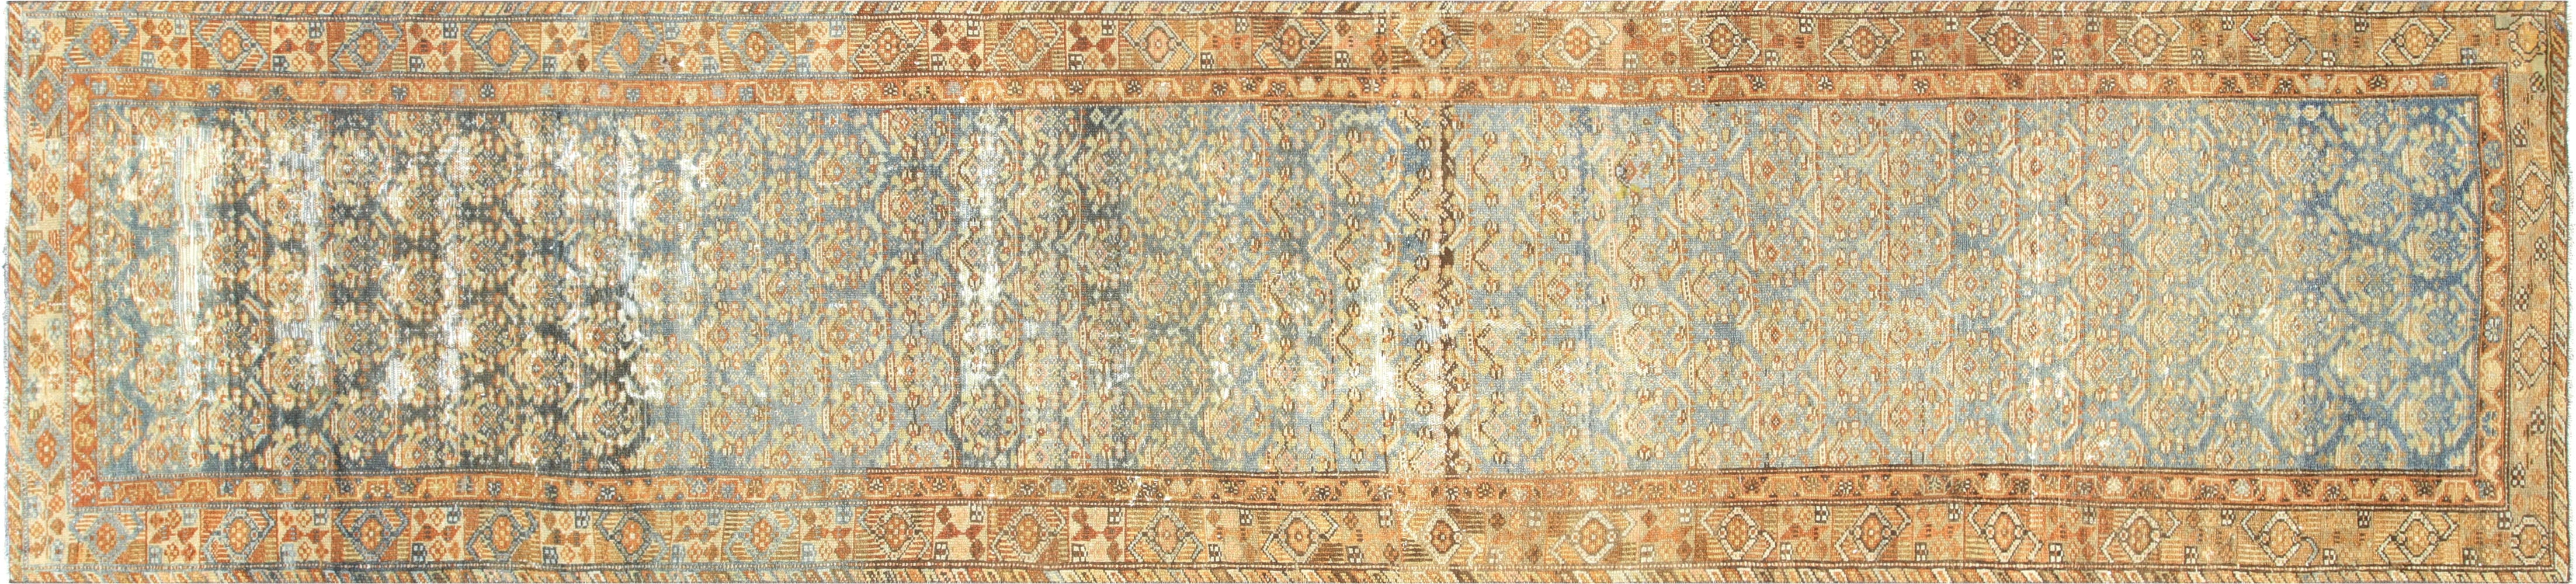 Antique Persian Melayer Runner - 3' x 13'3"